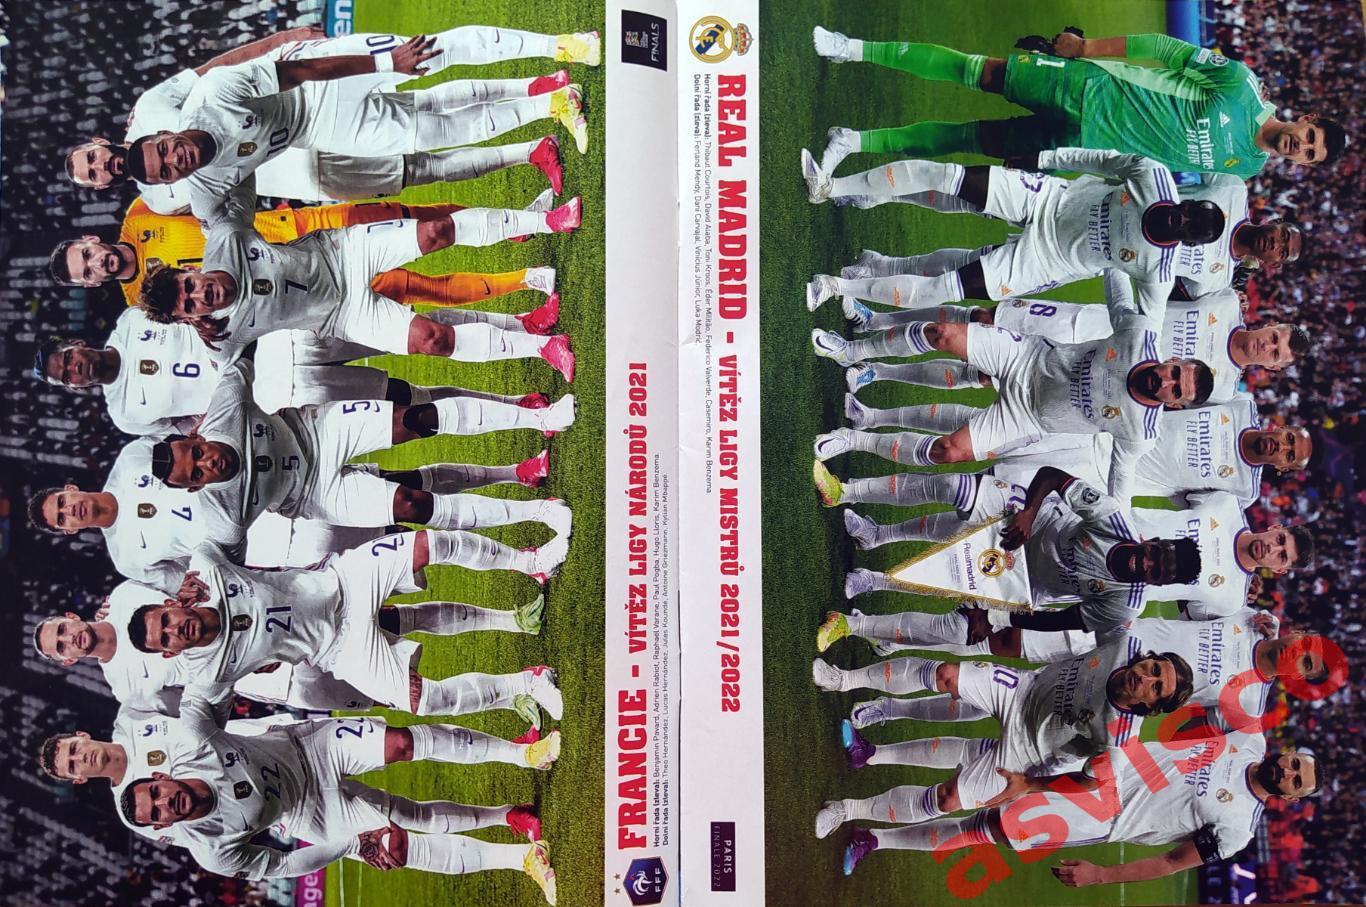 !!! РАДОСТЬ для коллекционеров постеров футбольных команд и звезд футбола !!!! 4